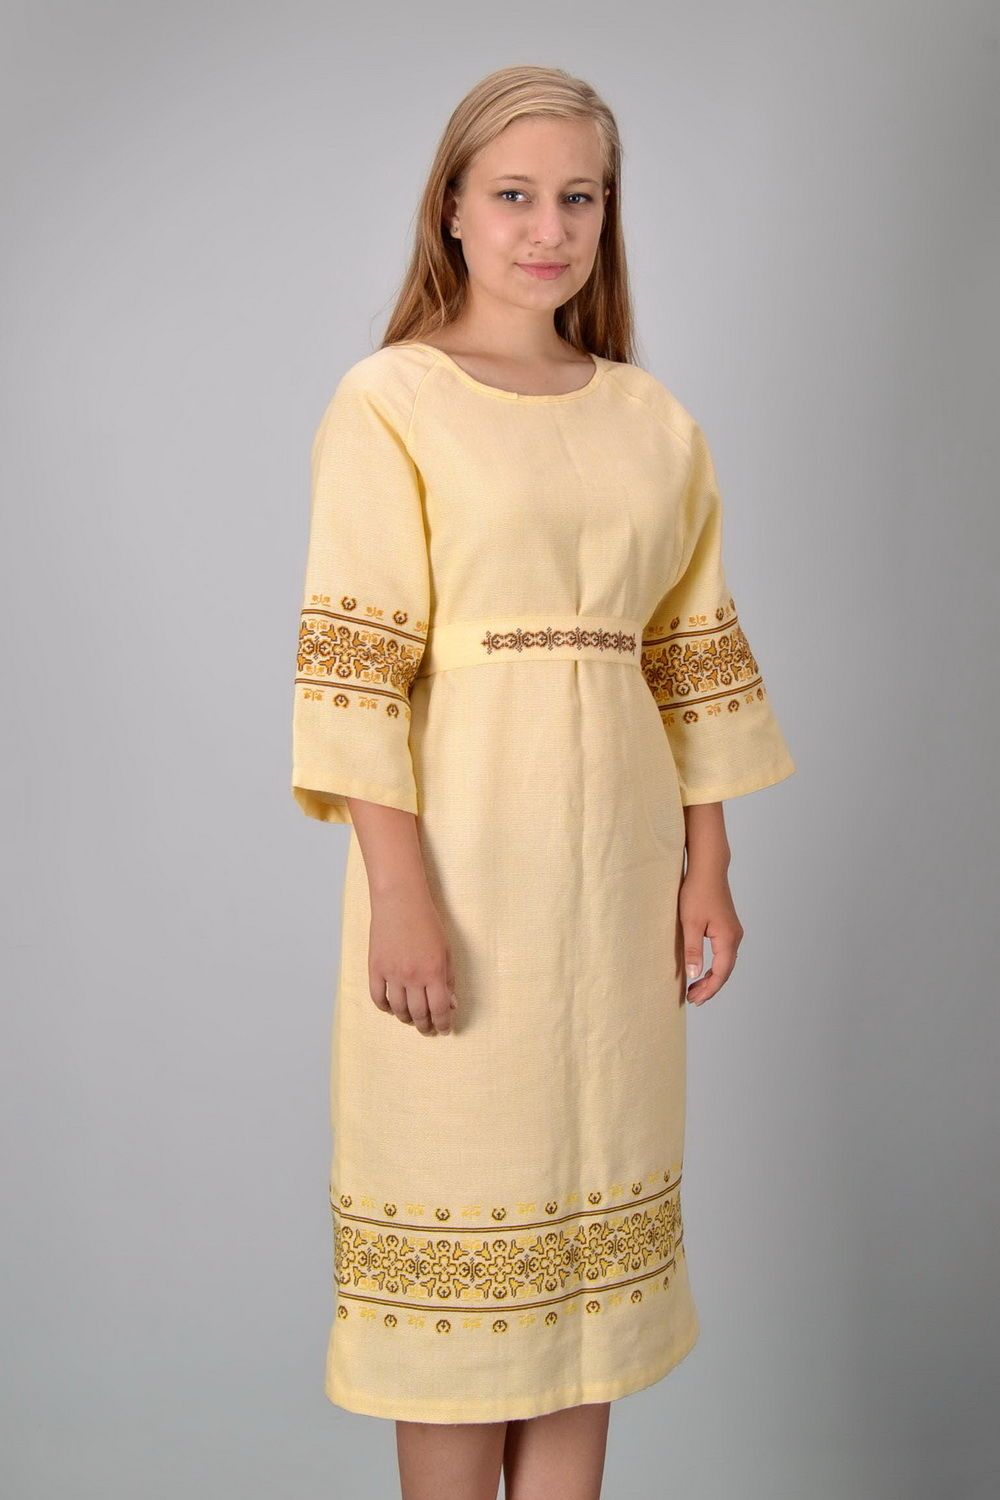 Damen Kleid mit Kreuzstich-Stickerei foto 4